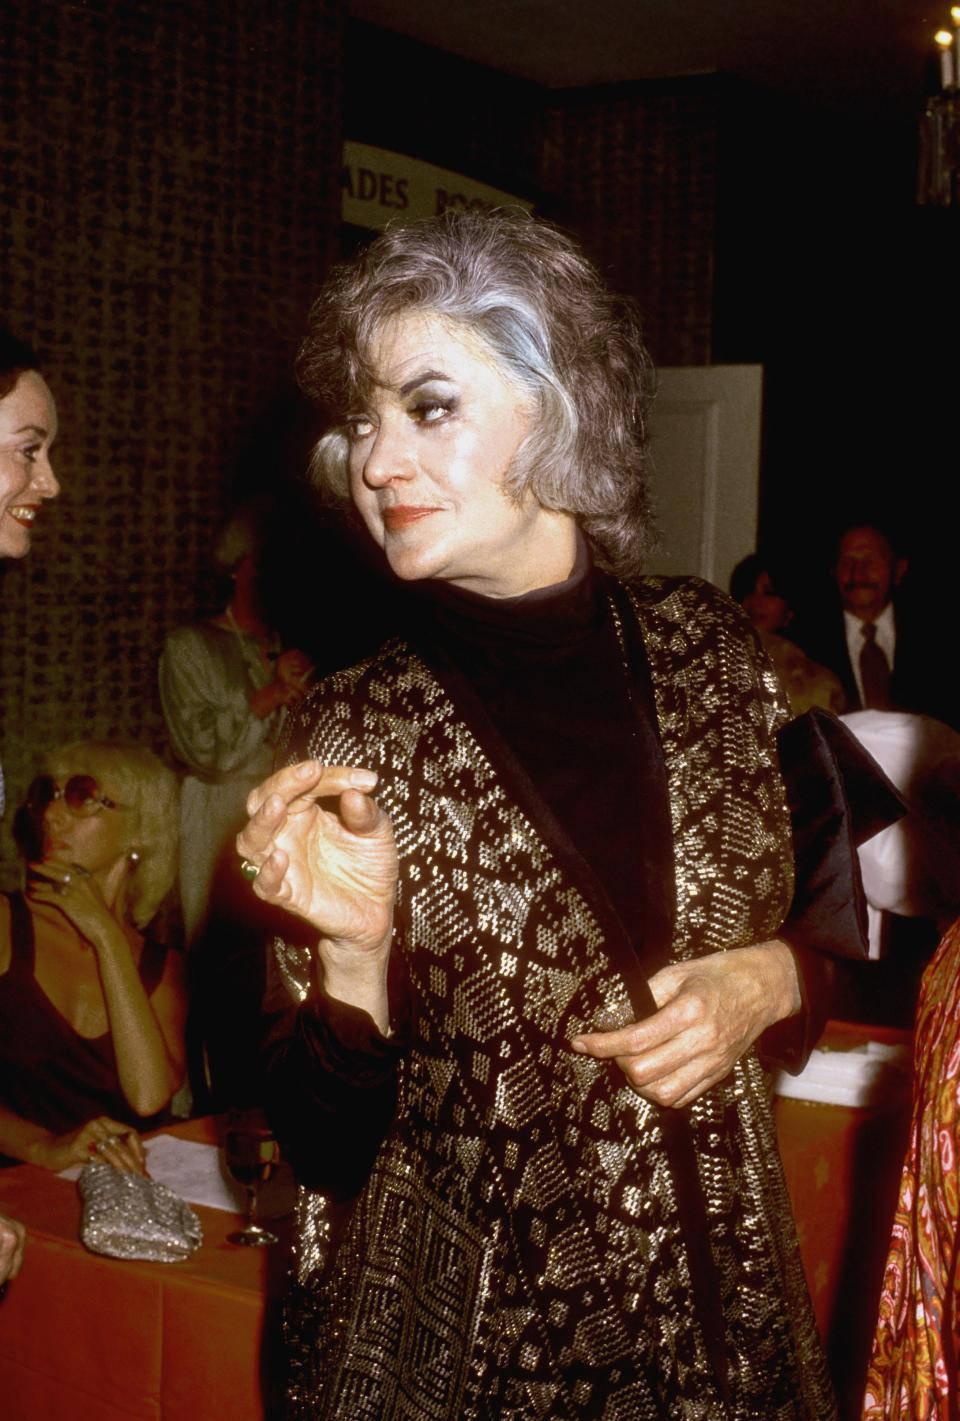 Amerikanischeschauspielerin Bea Arthur Bei Einem Event In Los Angeles Im Jahr 1975. Wallpaper